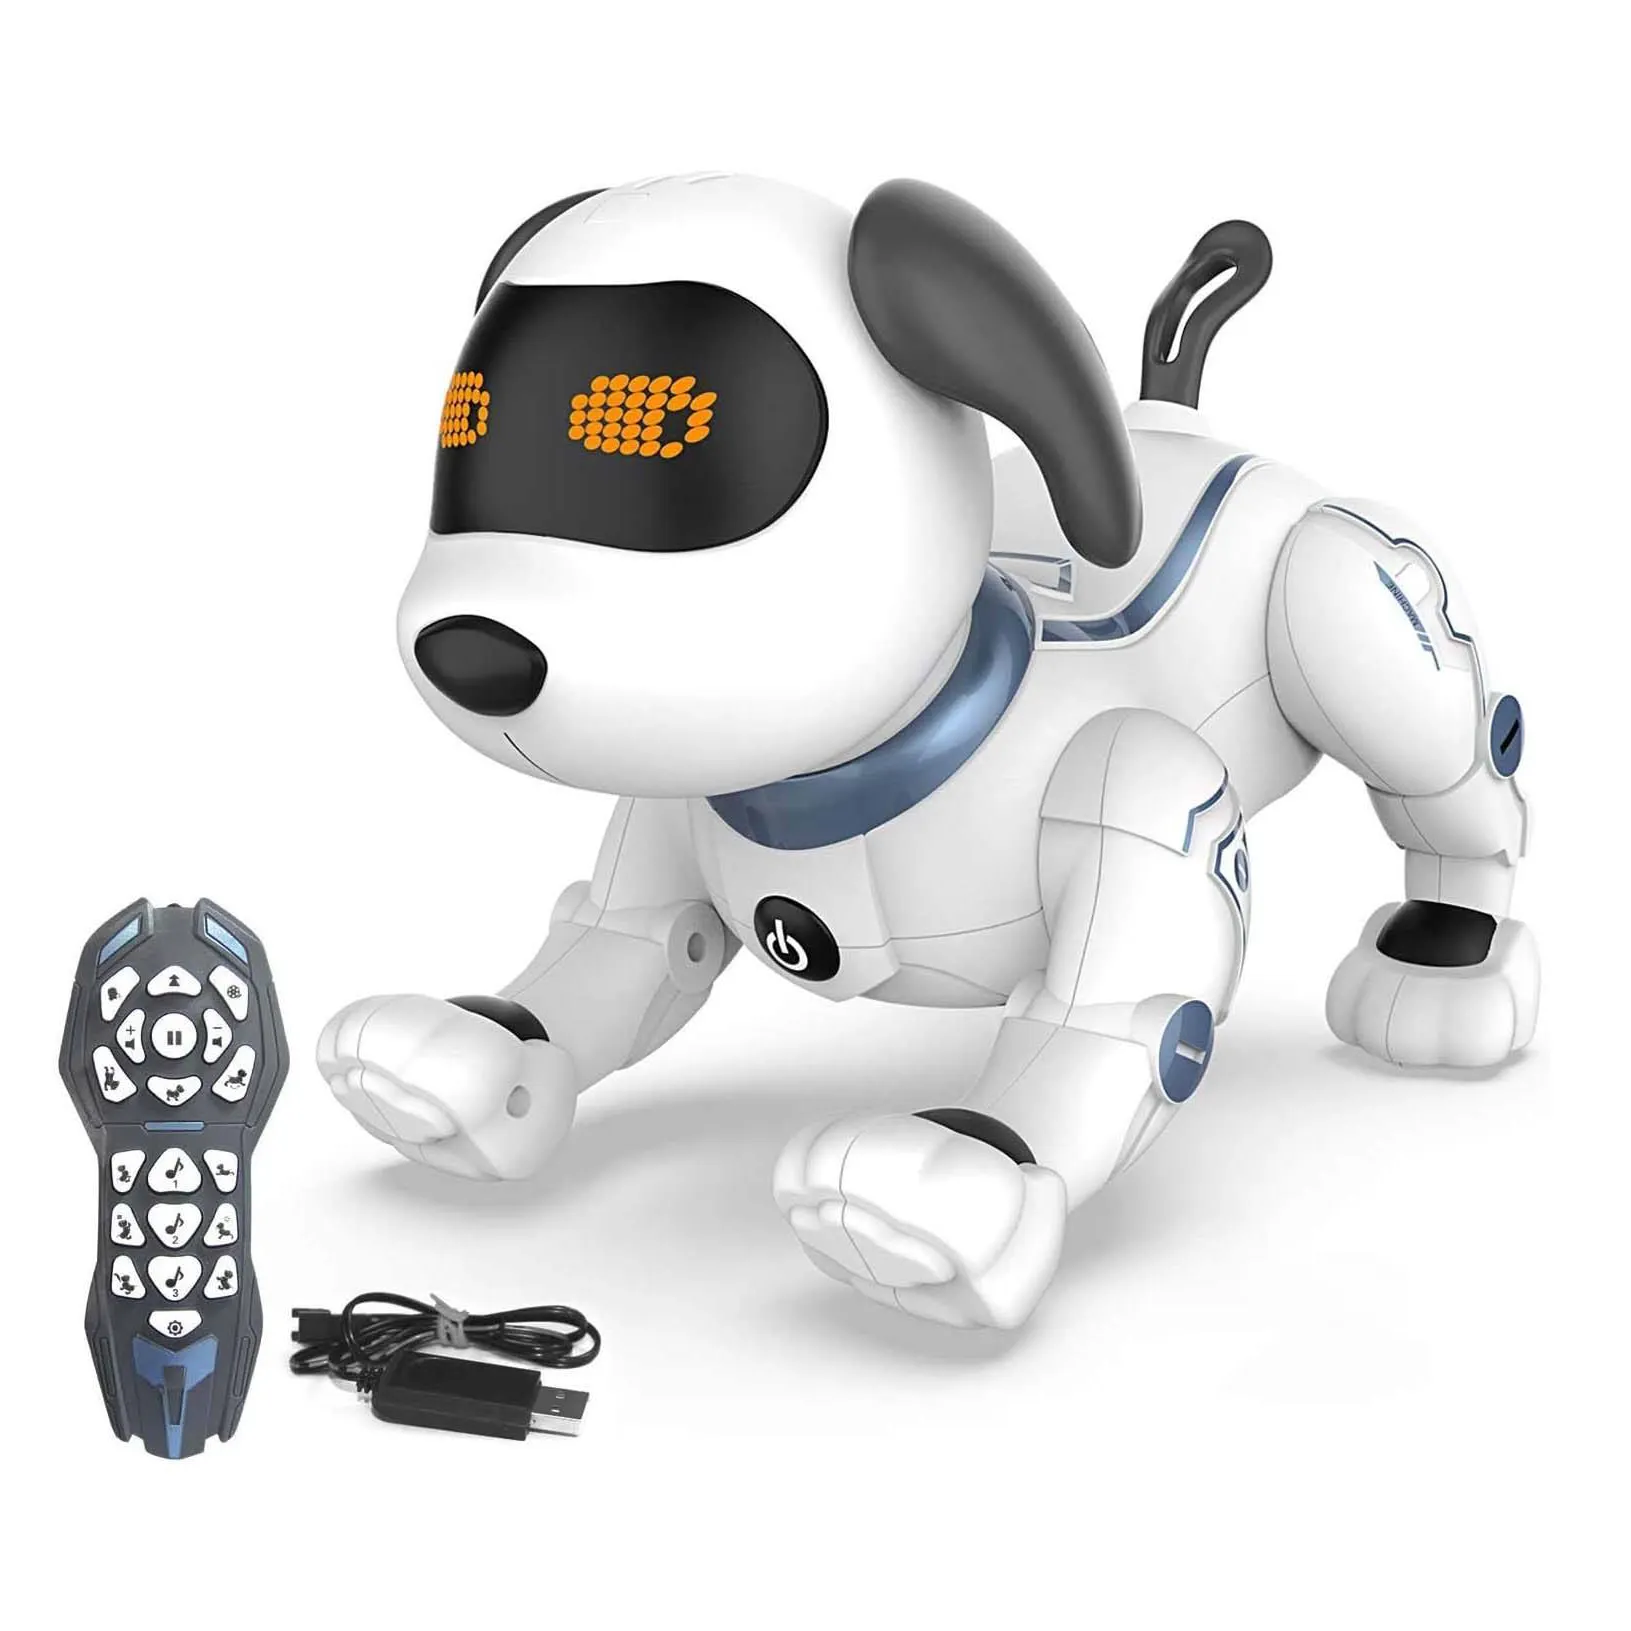 Điều khiển từ xa Robot dog cho trẻ em, RC diễn viên đóng Thế lập trình Robot Puppy Dog đồ chơi hát, khiêu vũ, sủa, đi điện tử Pet Dog